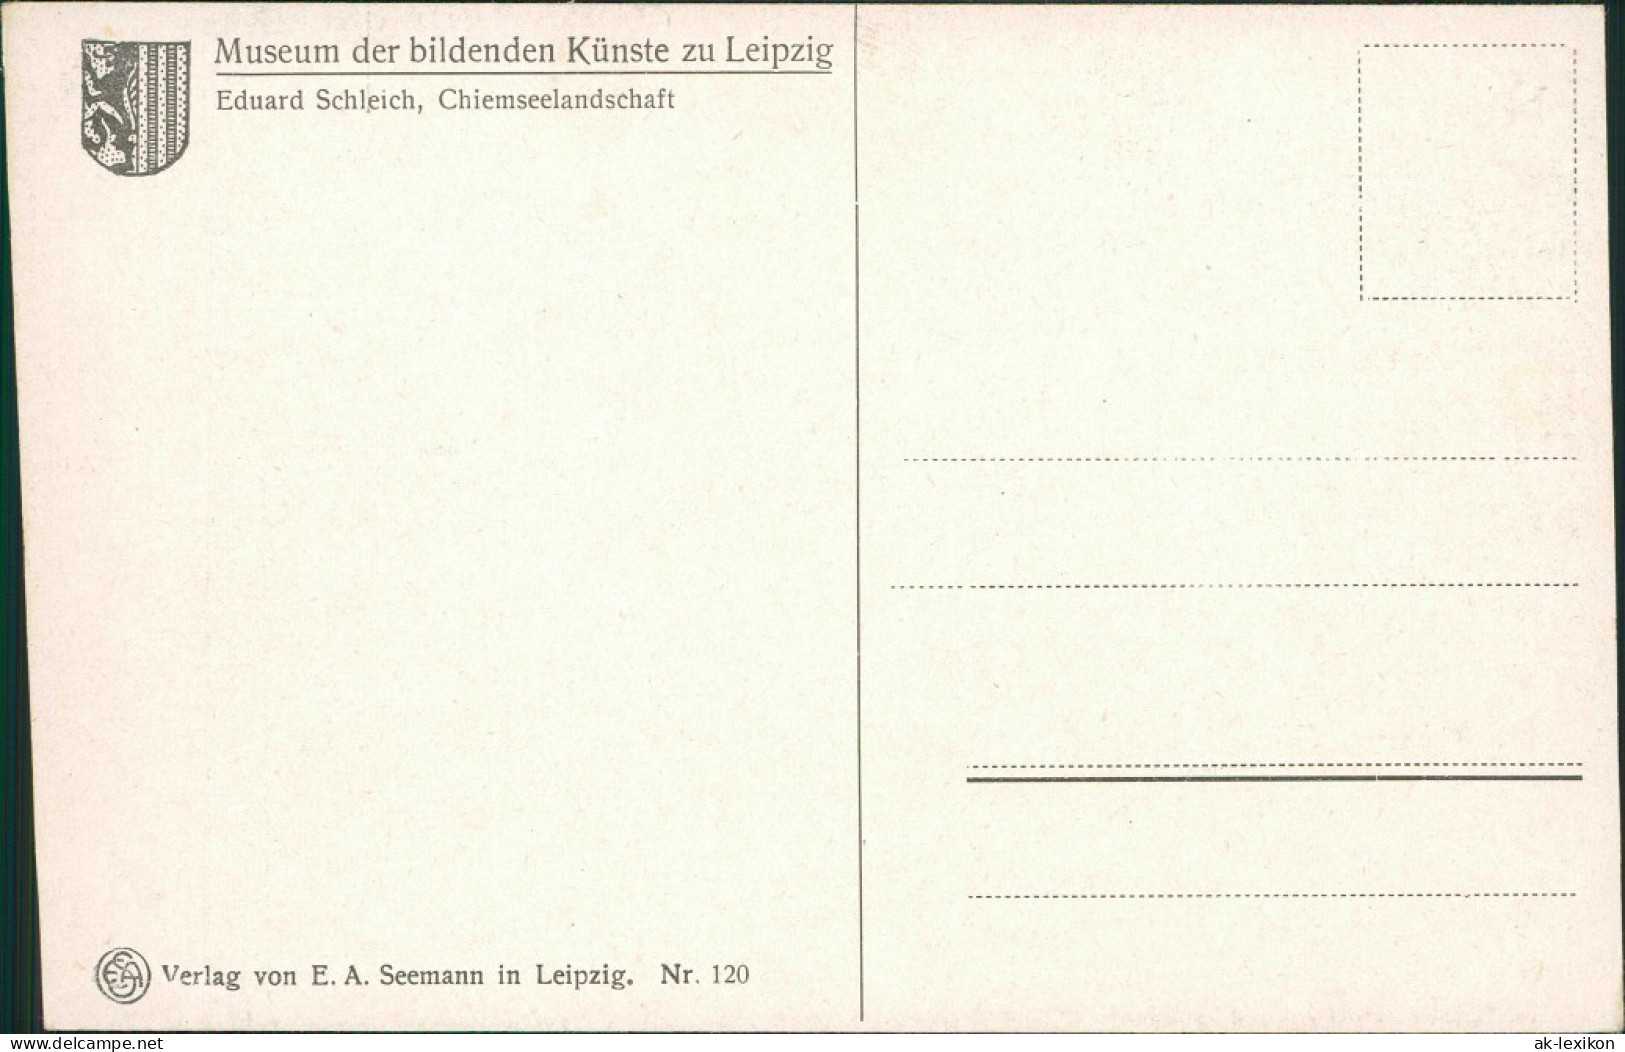  Künstlerkarte: Gemälde / Kunstwerke - Chiemseelandschaft - Eduard Schleich 1913 - Pittura & Quadri